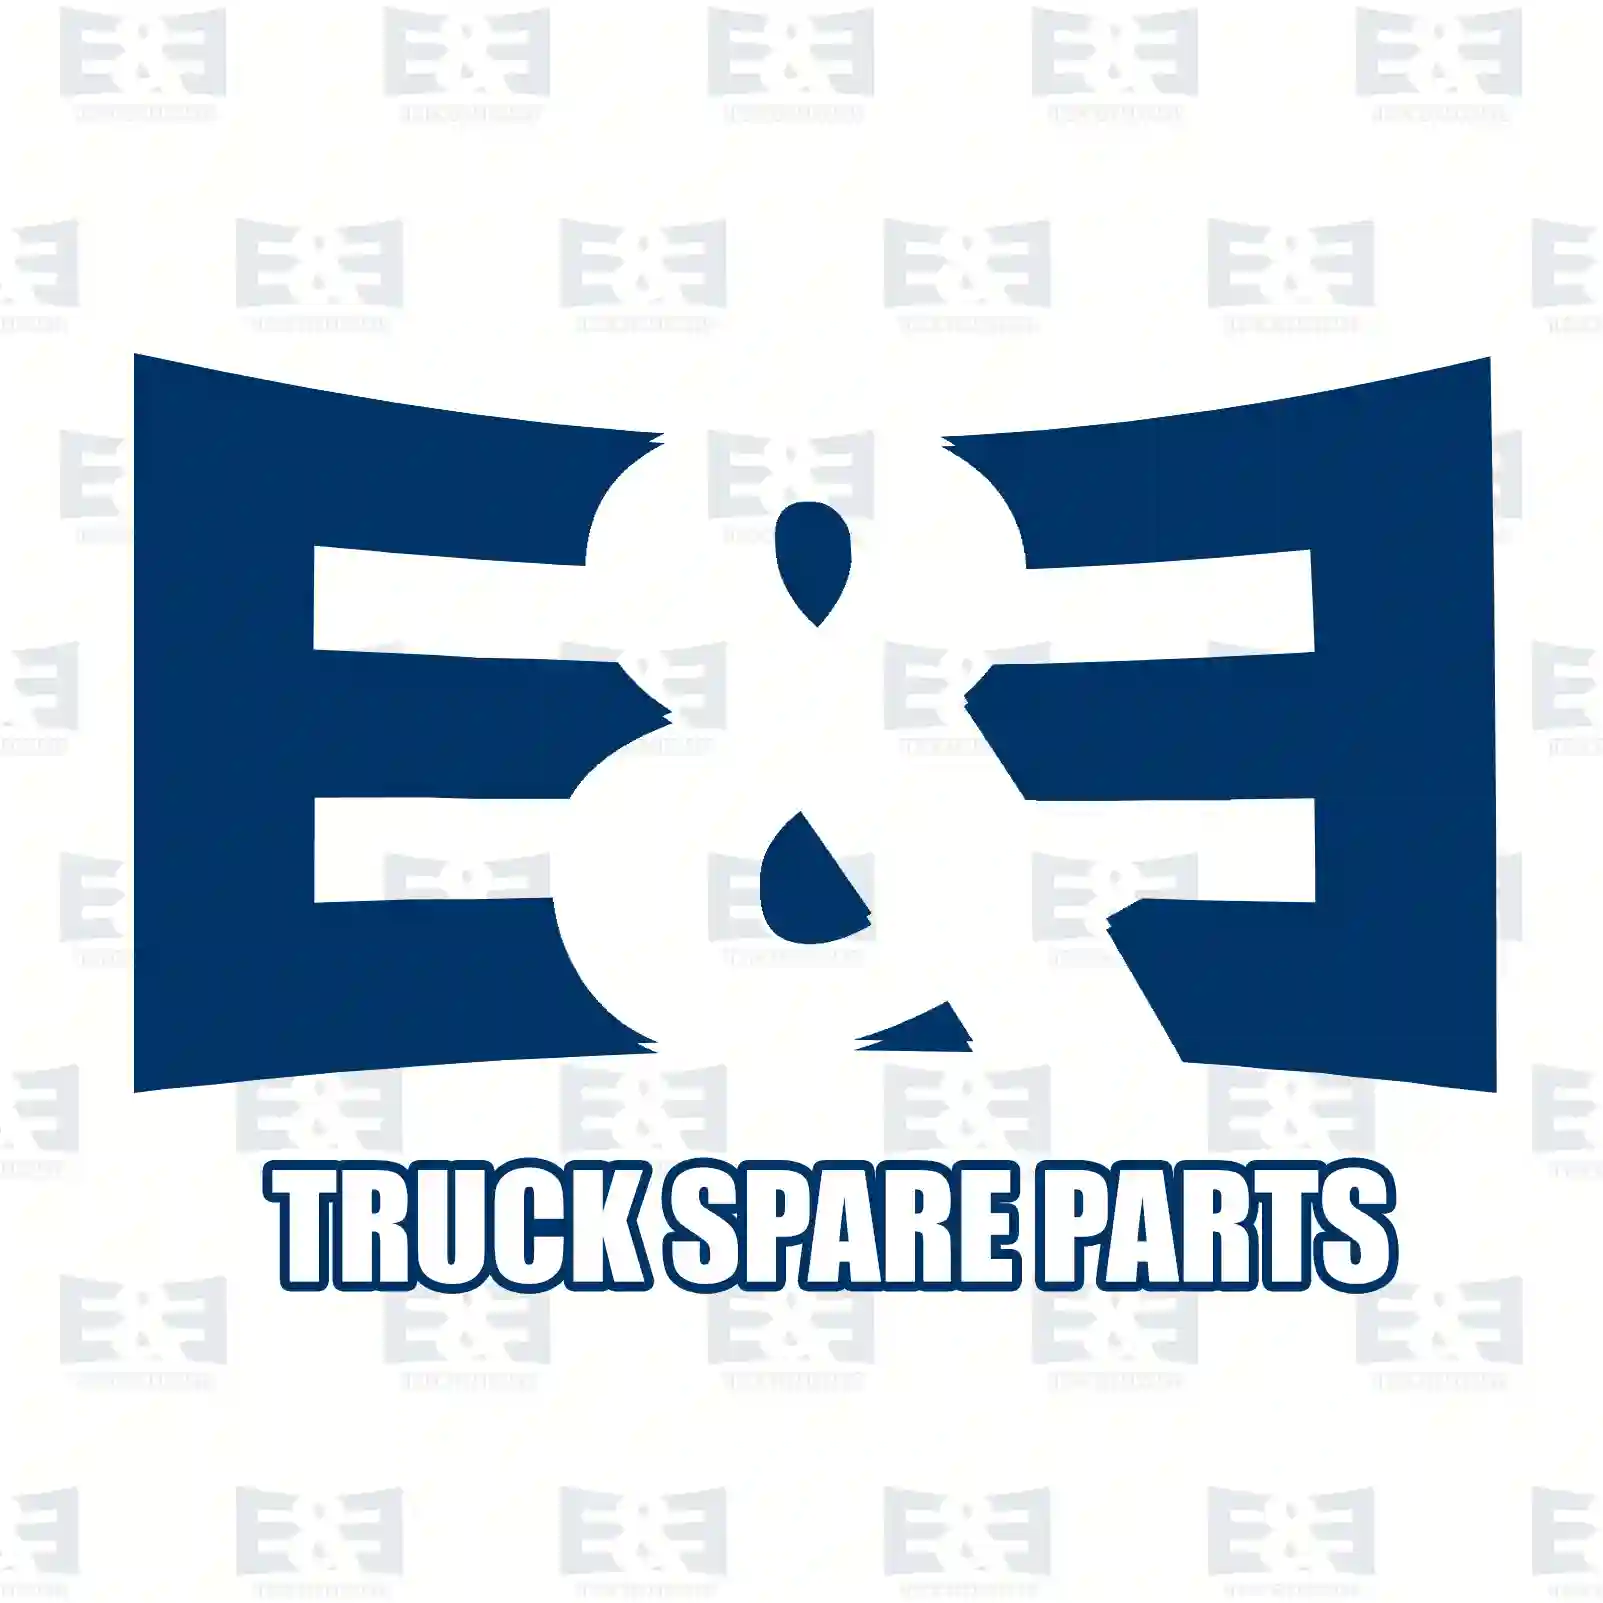 King pin kit, 2E2279852, 5000336306, 5000336306, ZG41284-0008 ||  2E2279852 E&E Truck Spare Parts | Truck Spare Parts, Auotomotive Spare Parts King pin kit, 2E2279852, 5000336306, 5000336306, ZG41284-0008 ||  2E2279852 E&E Truck Spare Parts | Truck Spare Parts, Auotomotive Spare Parts